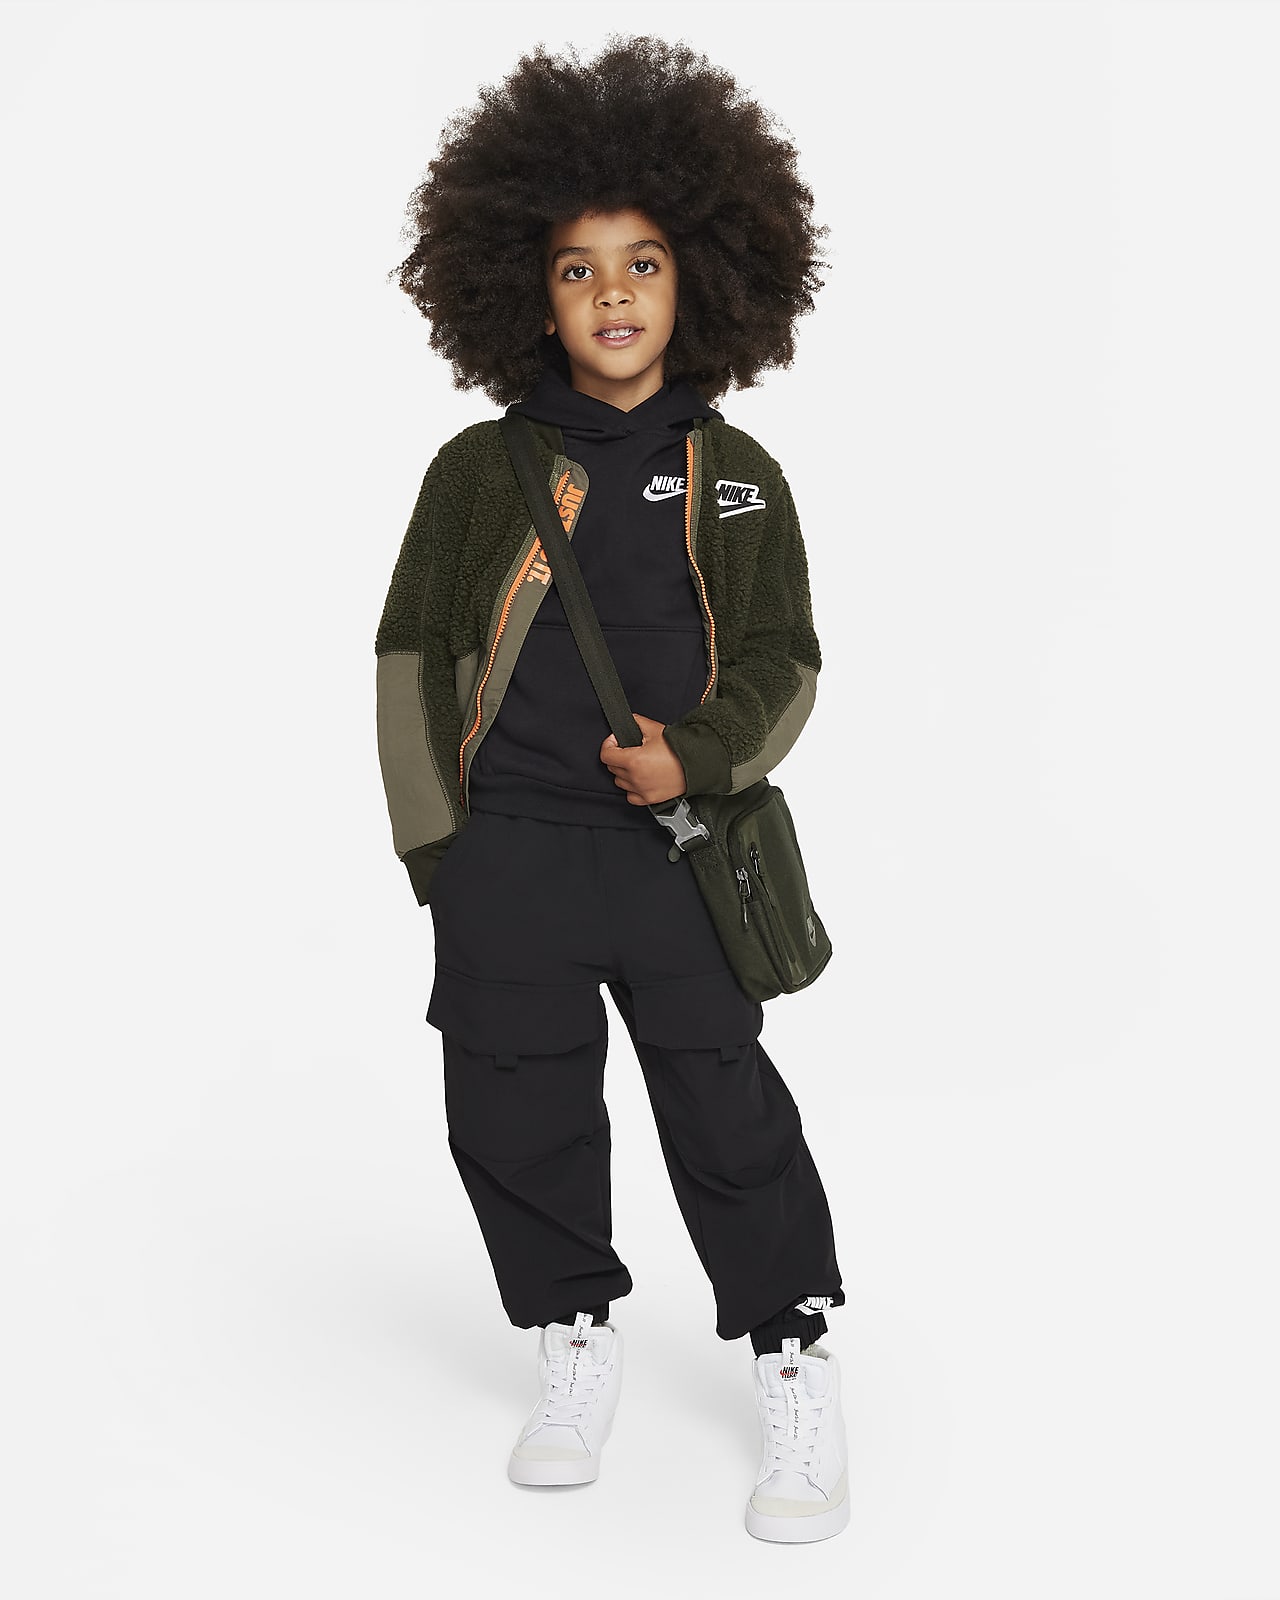 Little Pullover Hoodie. Club Kids Nike Sportswear Fleece